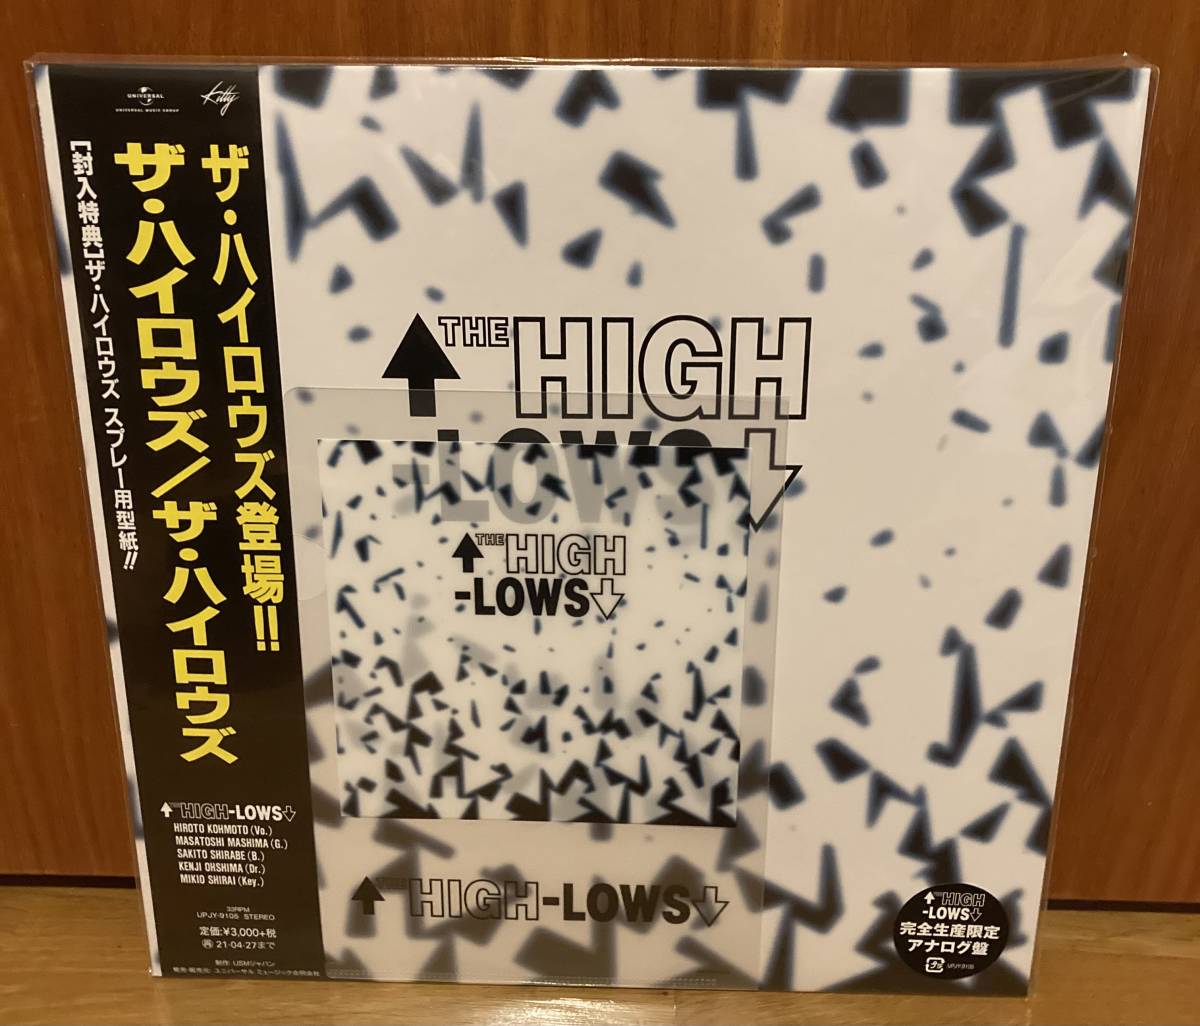 ハイロウズ THE HIGH-LOWS LP アナログ盤 1995年 オリジナル盤 帯 付録